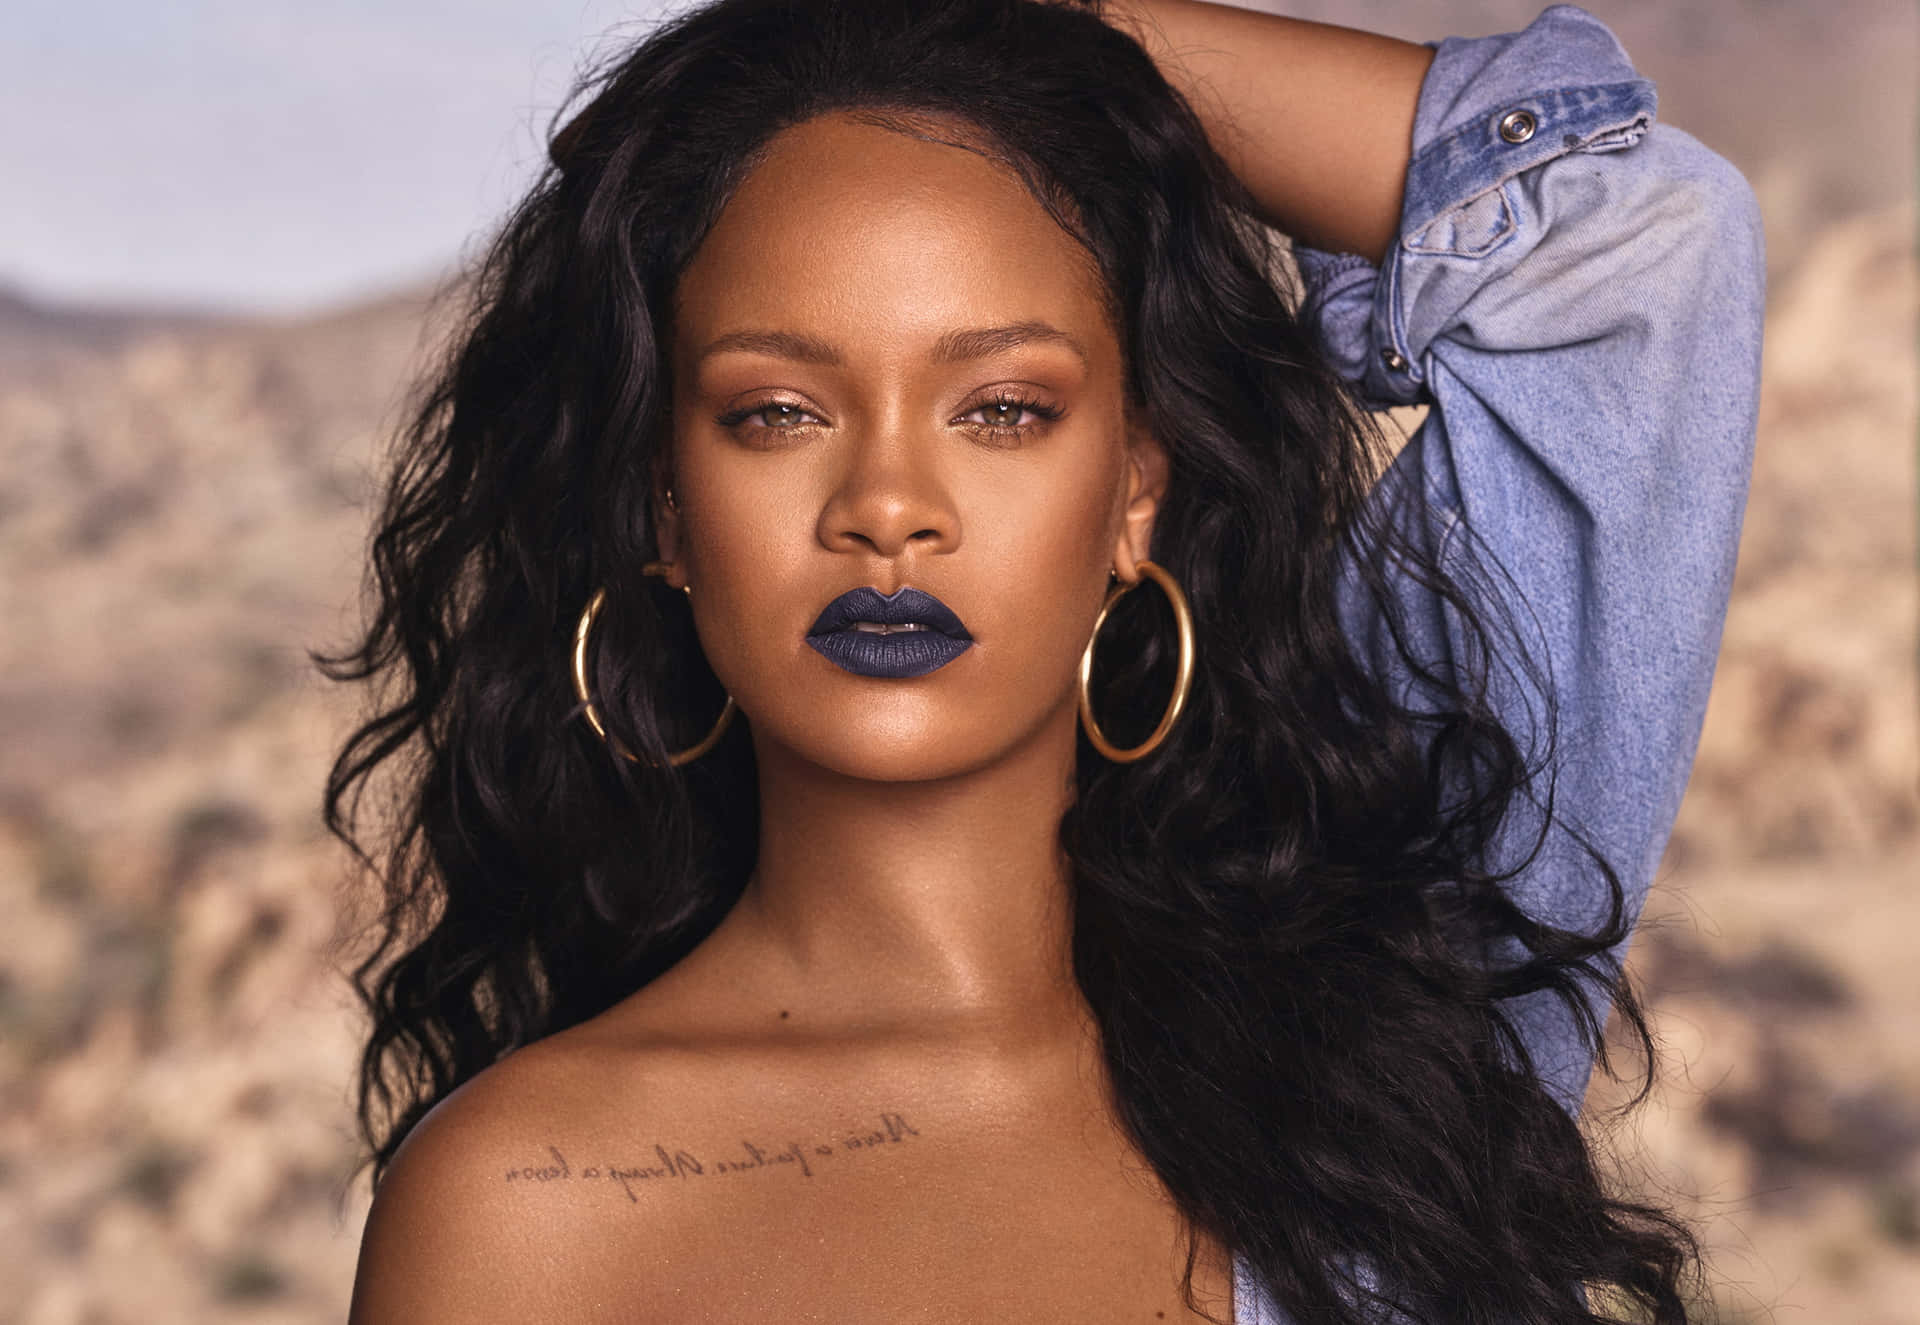 Labellezza Affascinante E La Grazia Incantevole Della Pop Star Rihanna Incantano I Suoi Fan.